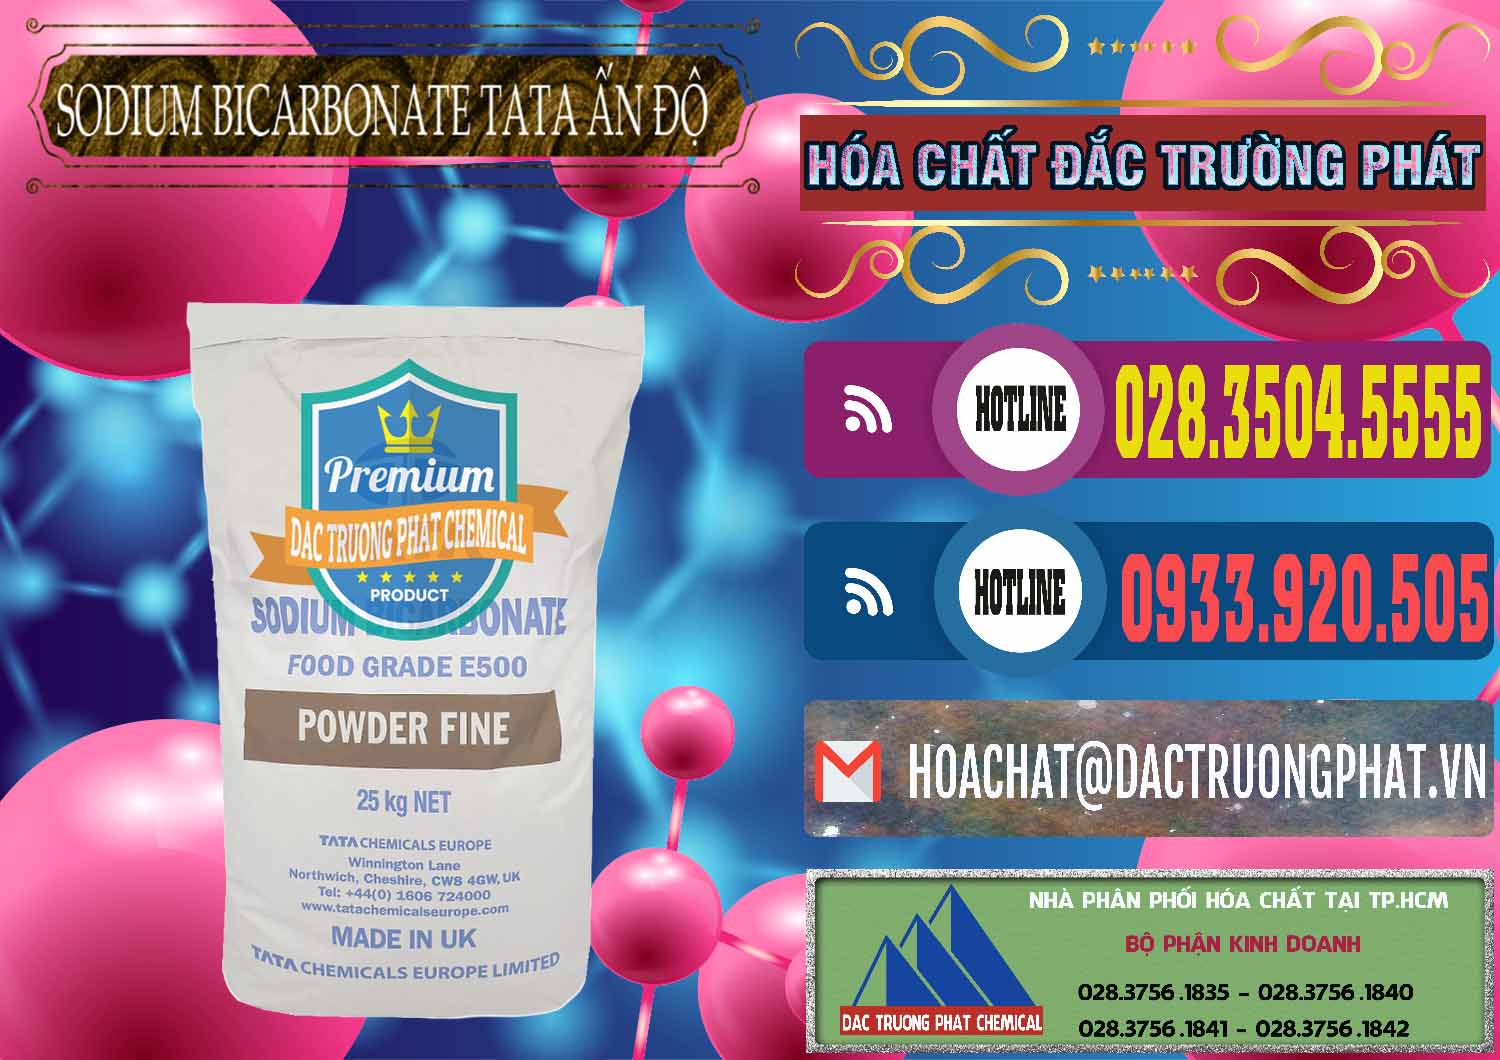 Cty chuyên kinh doanh - bán Sodium Bicarbonate – Bicar NaHCO3 E500 Thực Phẩm Food Grade Tata Ấn Độ India - 0261 - Cty chuyên kinh doanh và phân phối hóa chất tại TP.HCM - muabanhoachat.com.vn